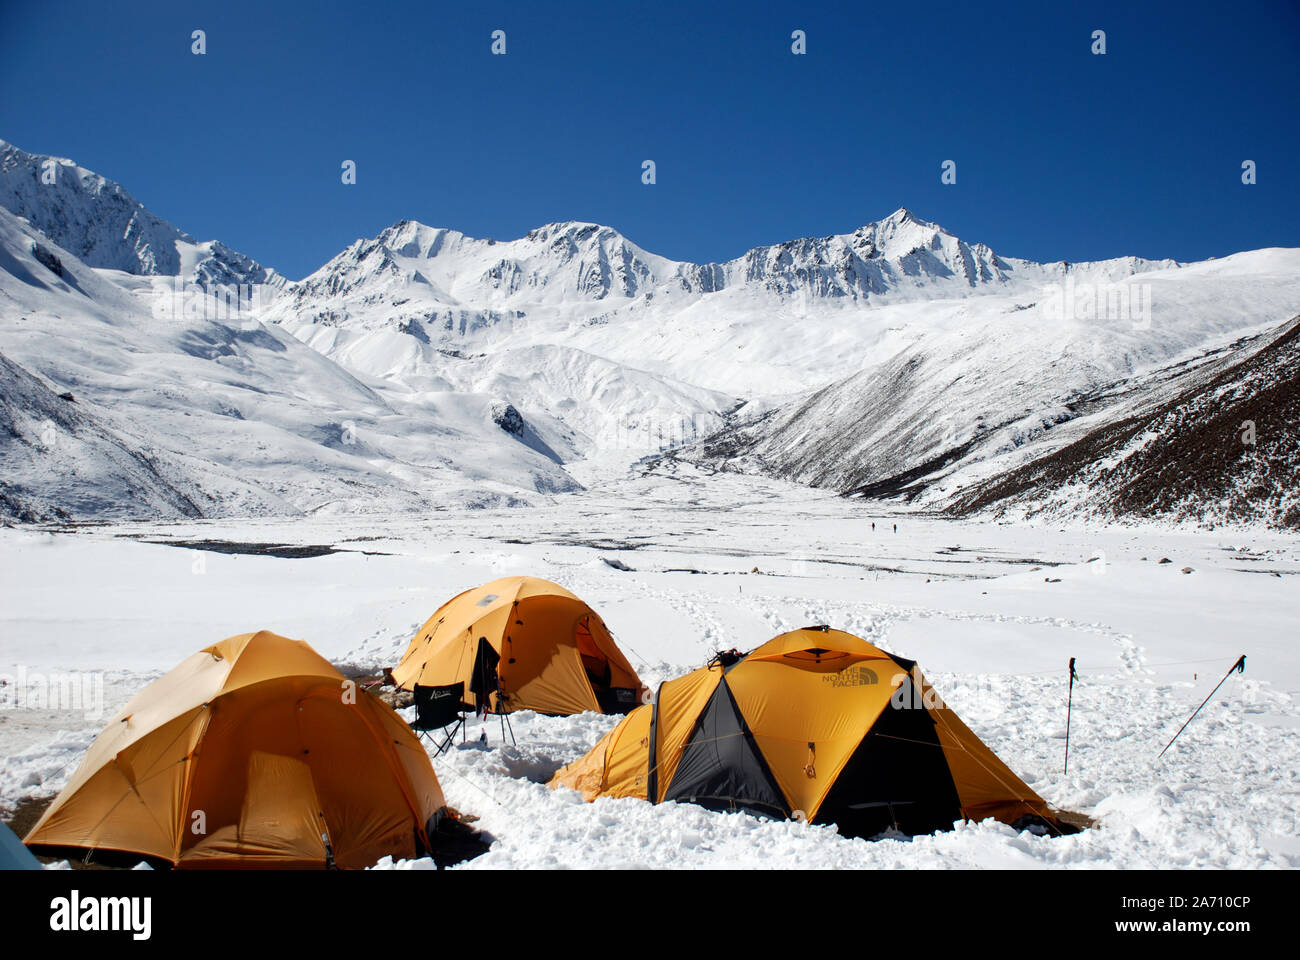 Un camp de base de l'escalade dans les montagnes de l'ouest du Sichuan Daxueshan en Chine Banque D'Images